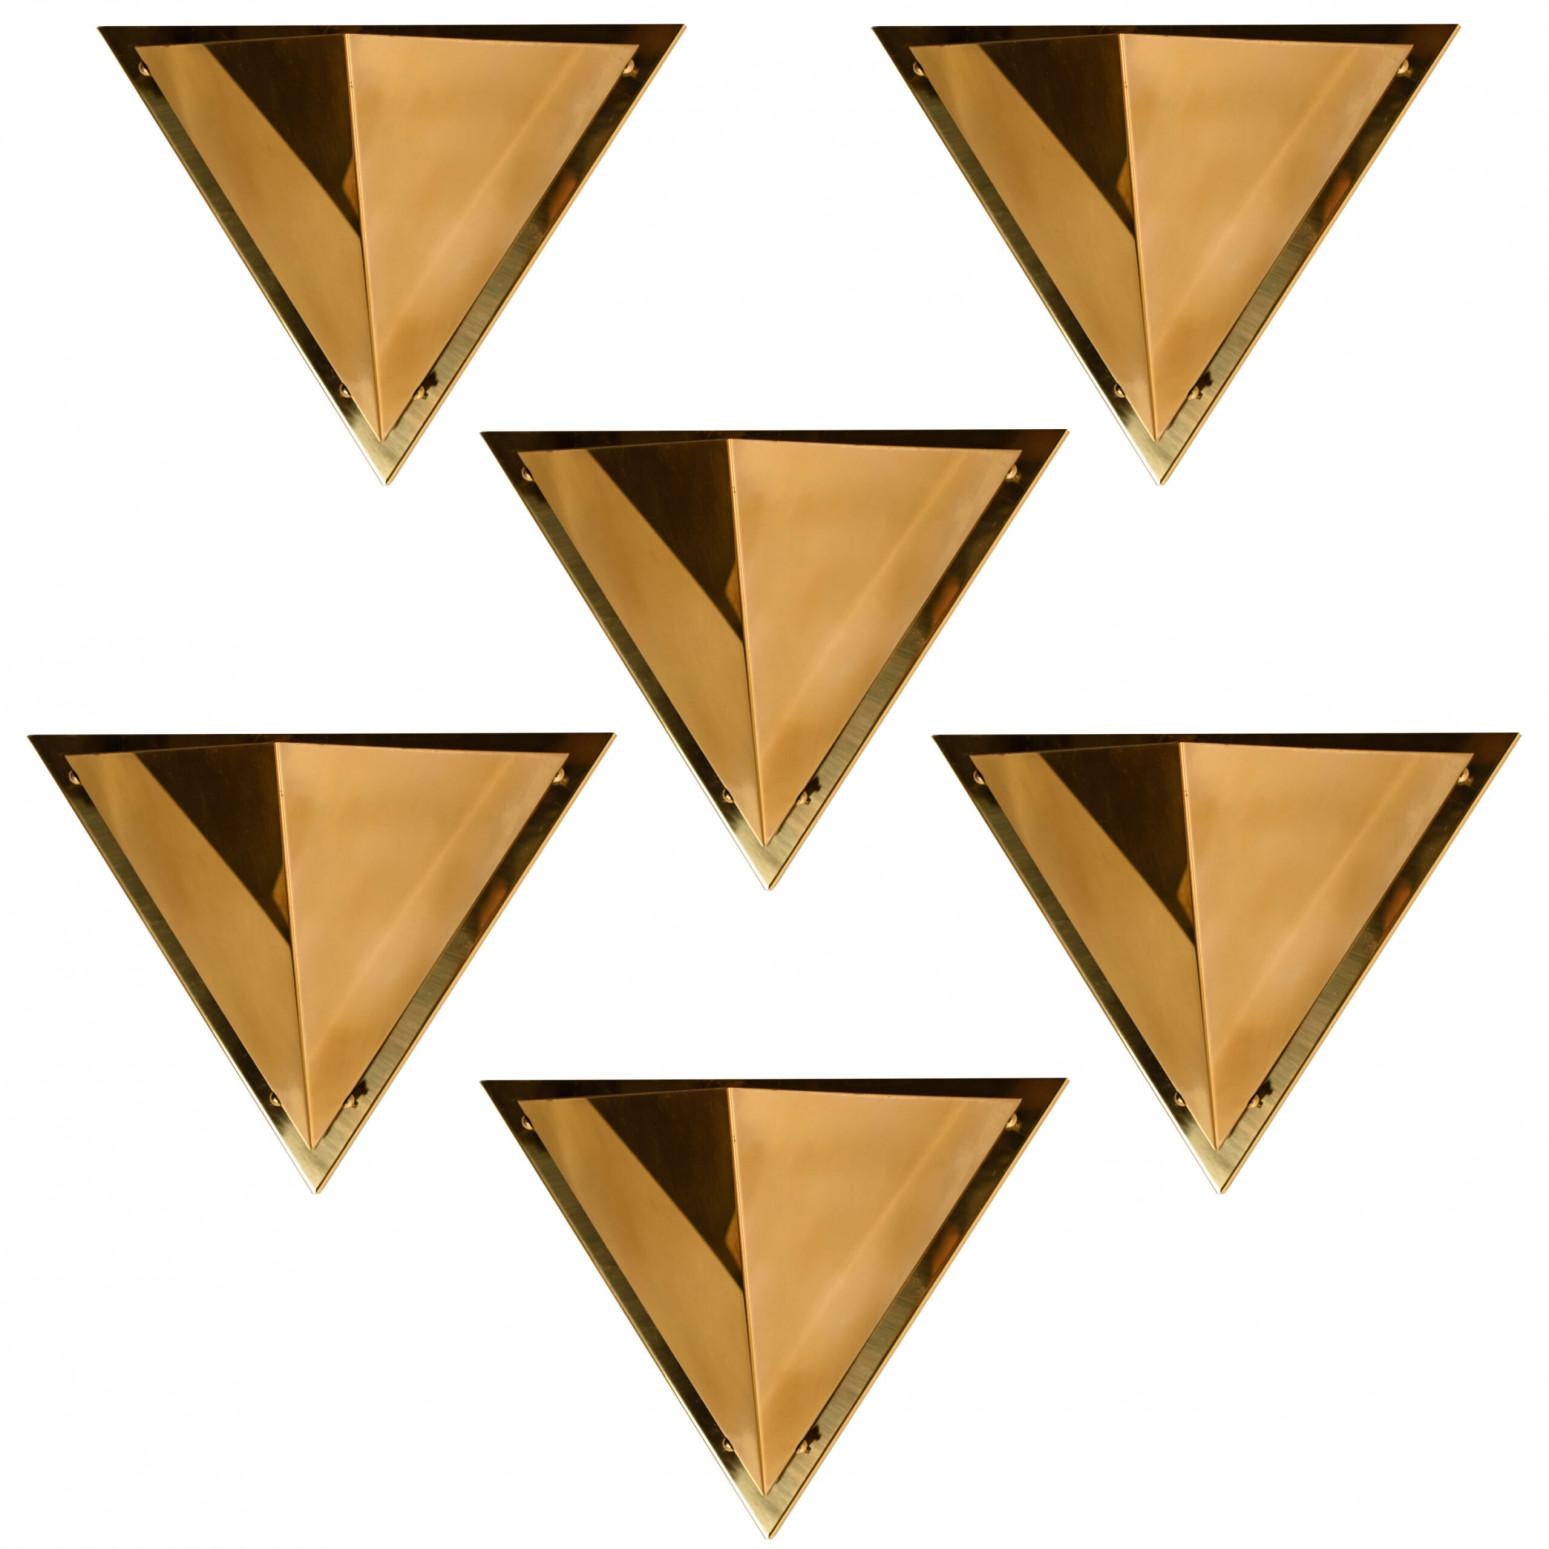 Eine der fünf pyramidenförmigen Wandlampen aus Messing, 1970. Jede Wandleuchte besteht aus Messingschirmen, die mit Messingschrauben an einem Messingrahmen befestigt sind. Die Wandleuchte erzeugt eine schöne warme Lichtverteilung nach oben und an